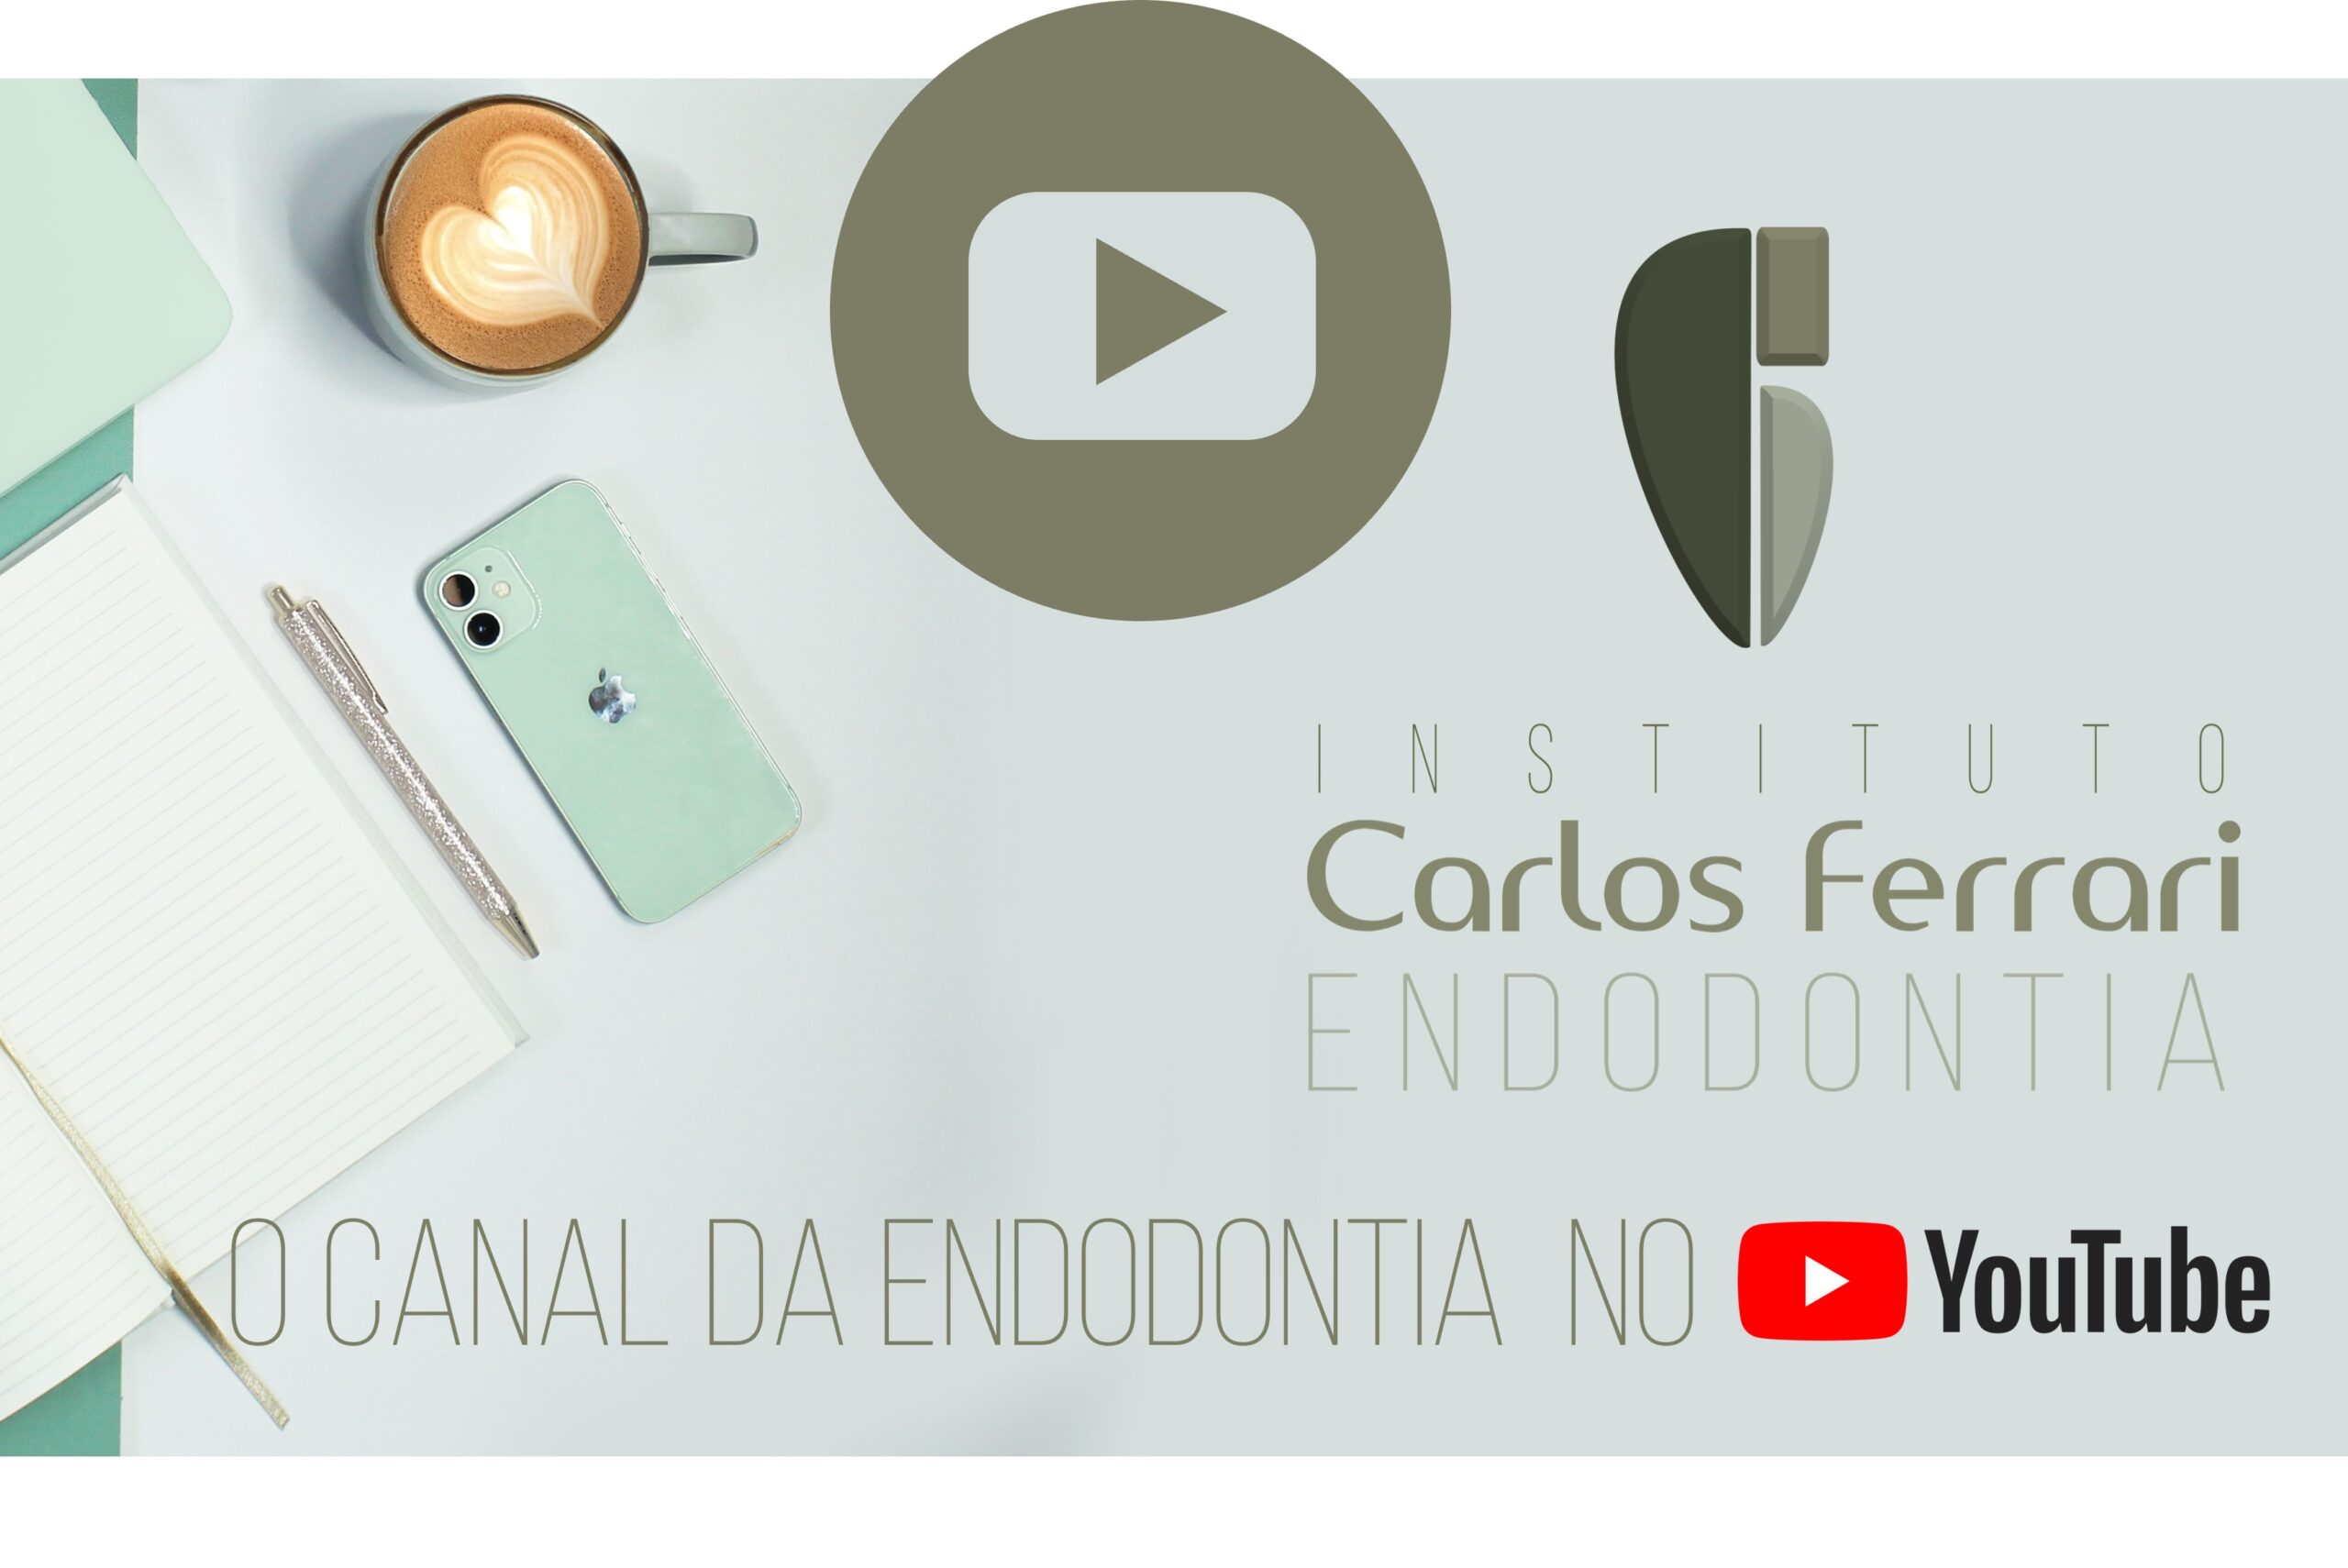 您目前正在观看牙髓病学在youtube上。频道 Carlos Ferrari.